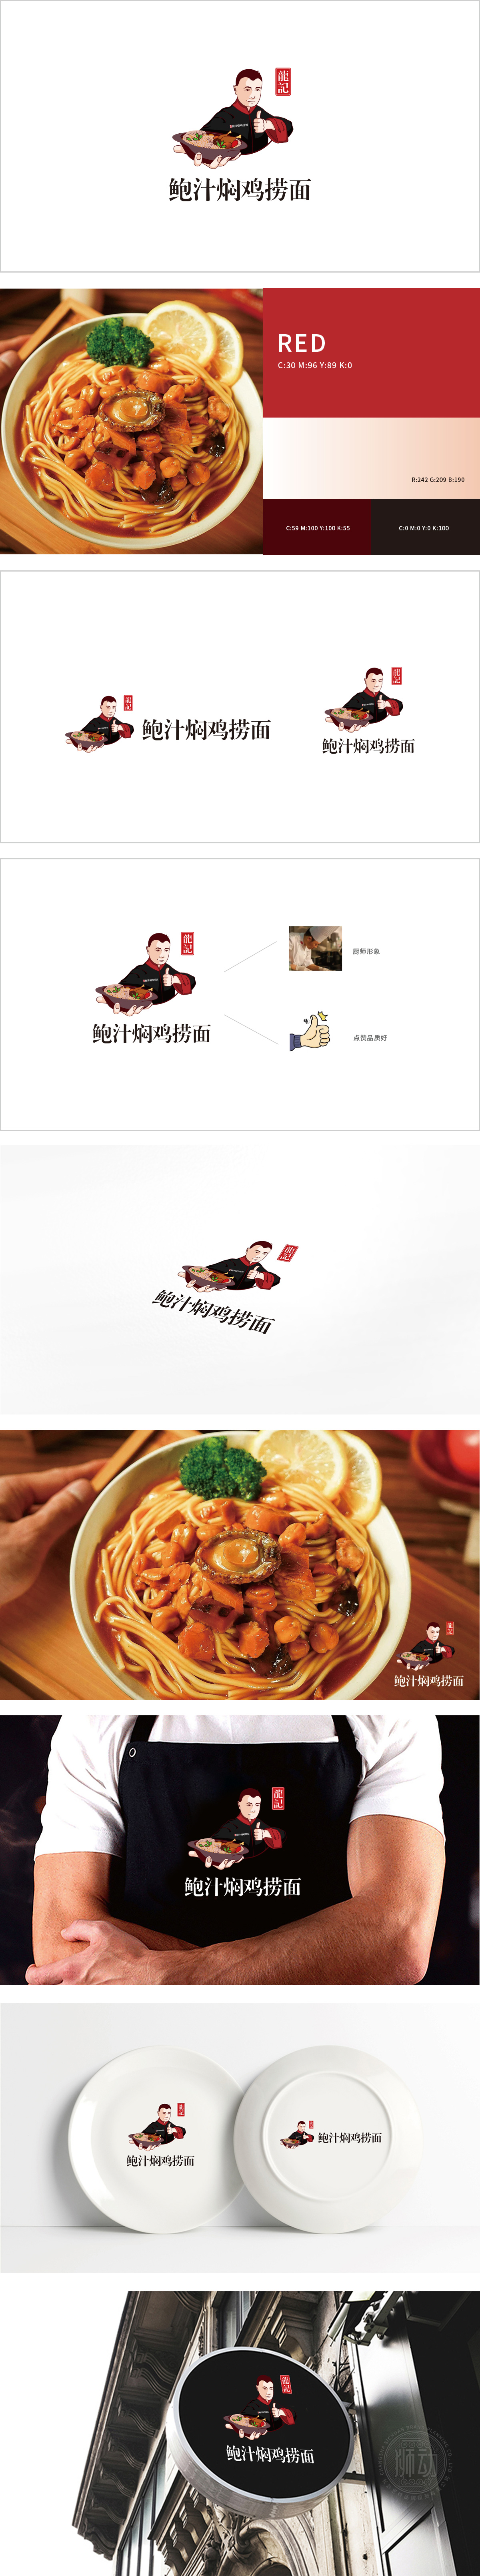 龍记鲍汁焖鸡 餐饮 吉祥物设计